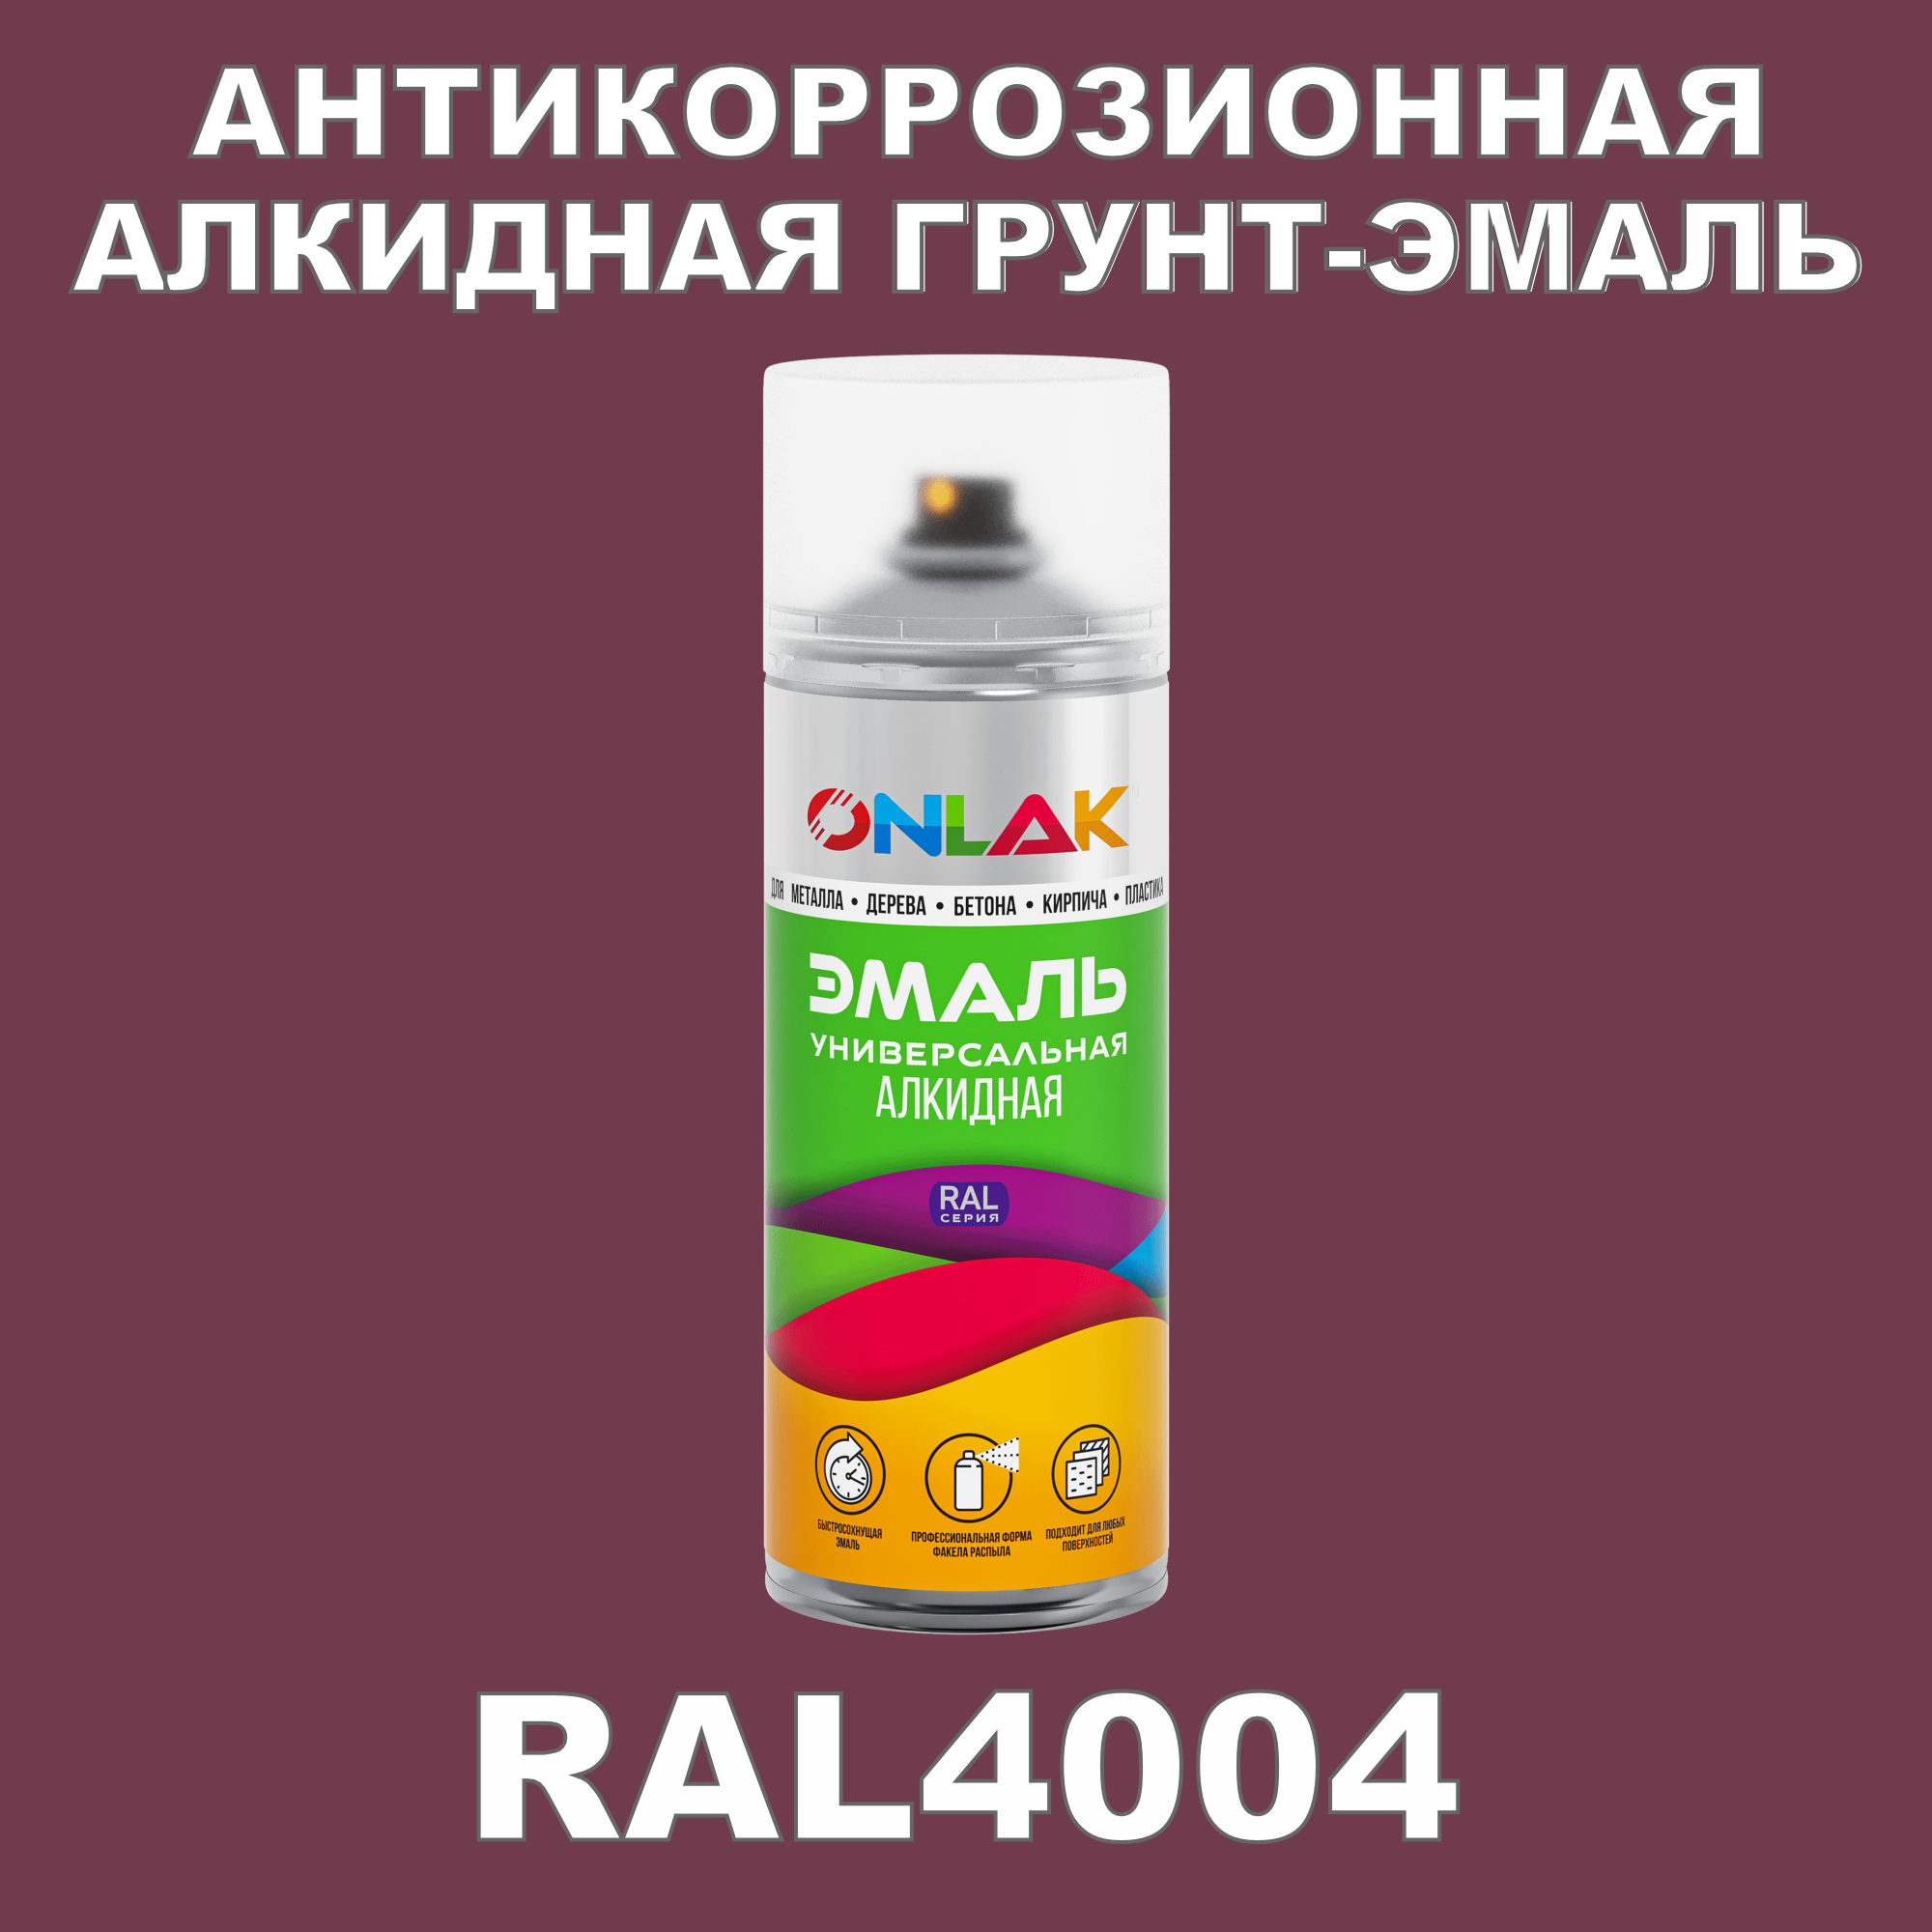 Антикоррозионная грунт-эмаль ONLAK RAL 4004,фиолетовый,657 мл artuniq color violet ной грунт для аквариума фиолетовый 1 кг